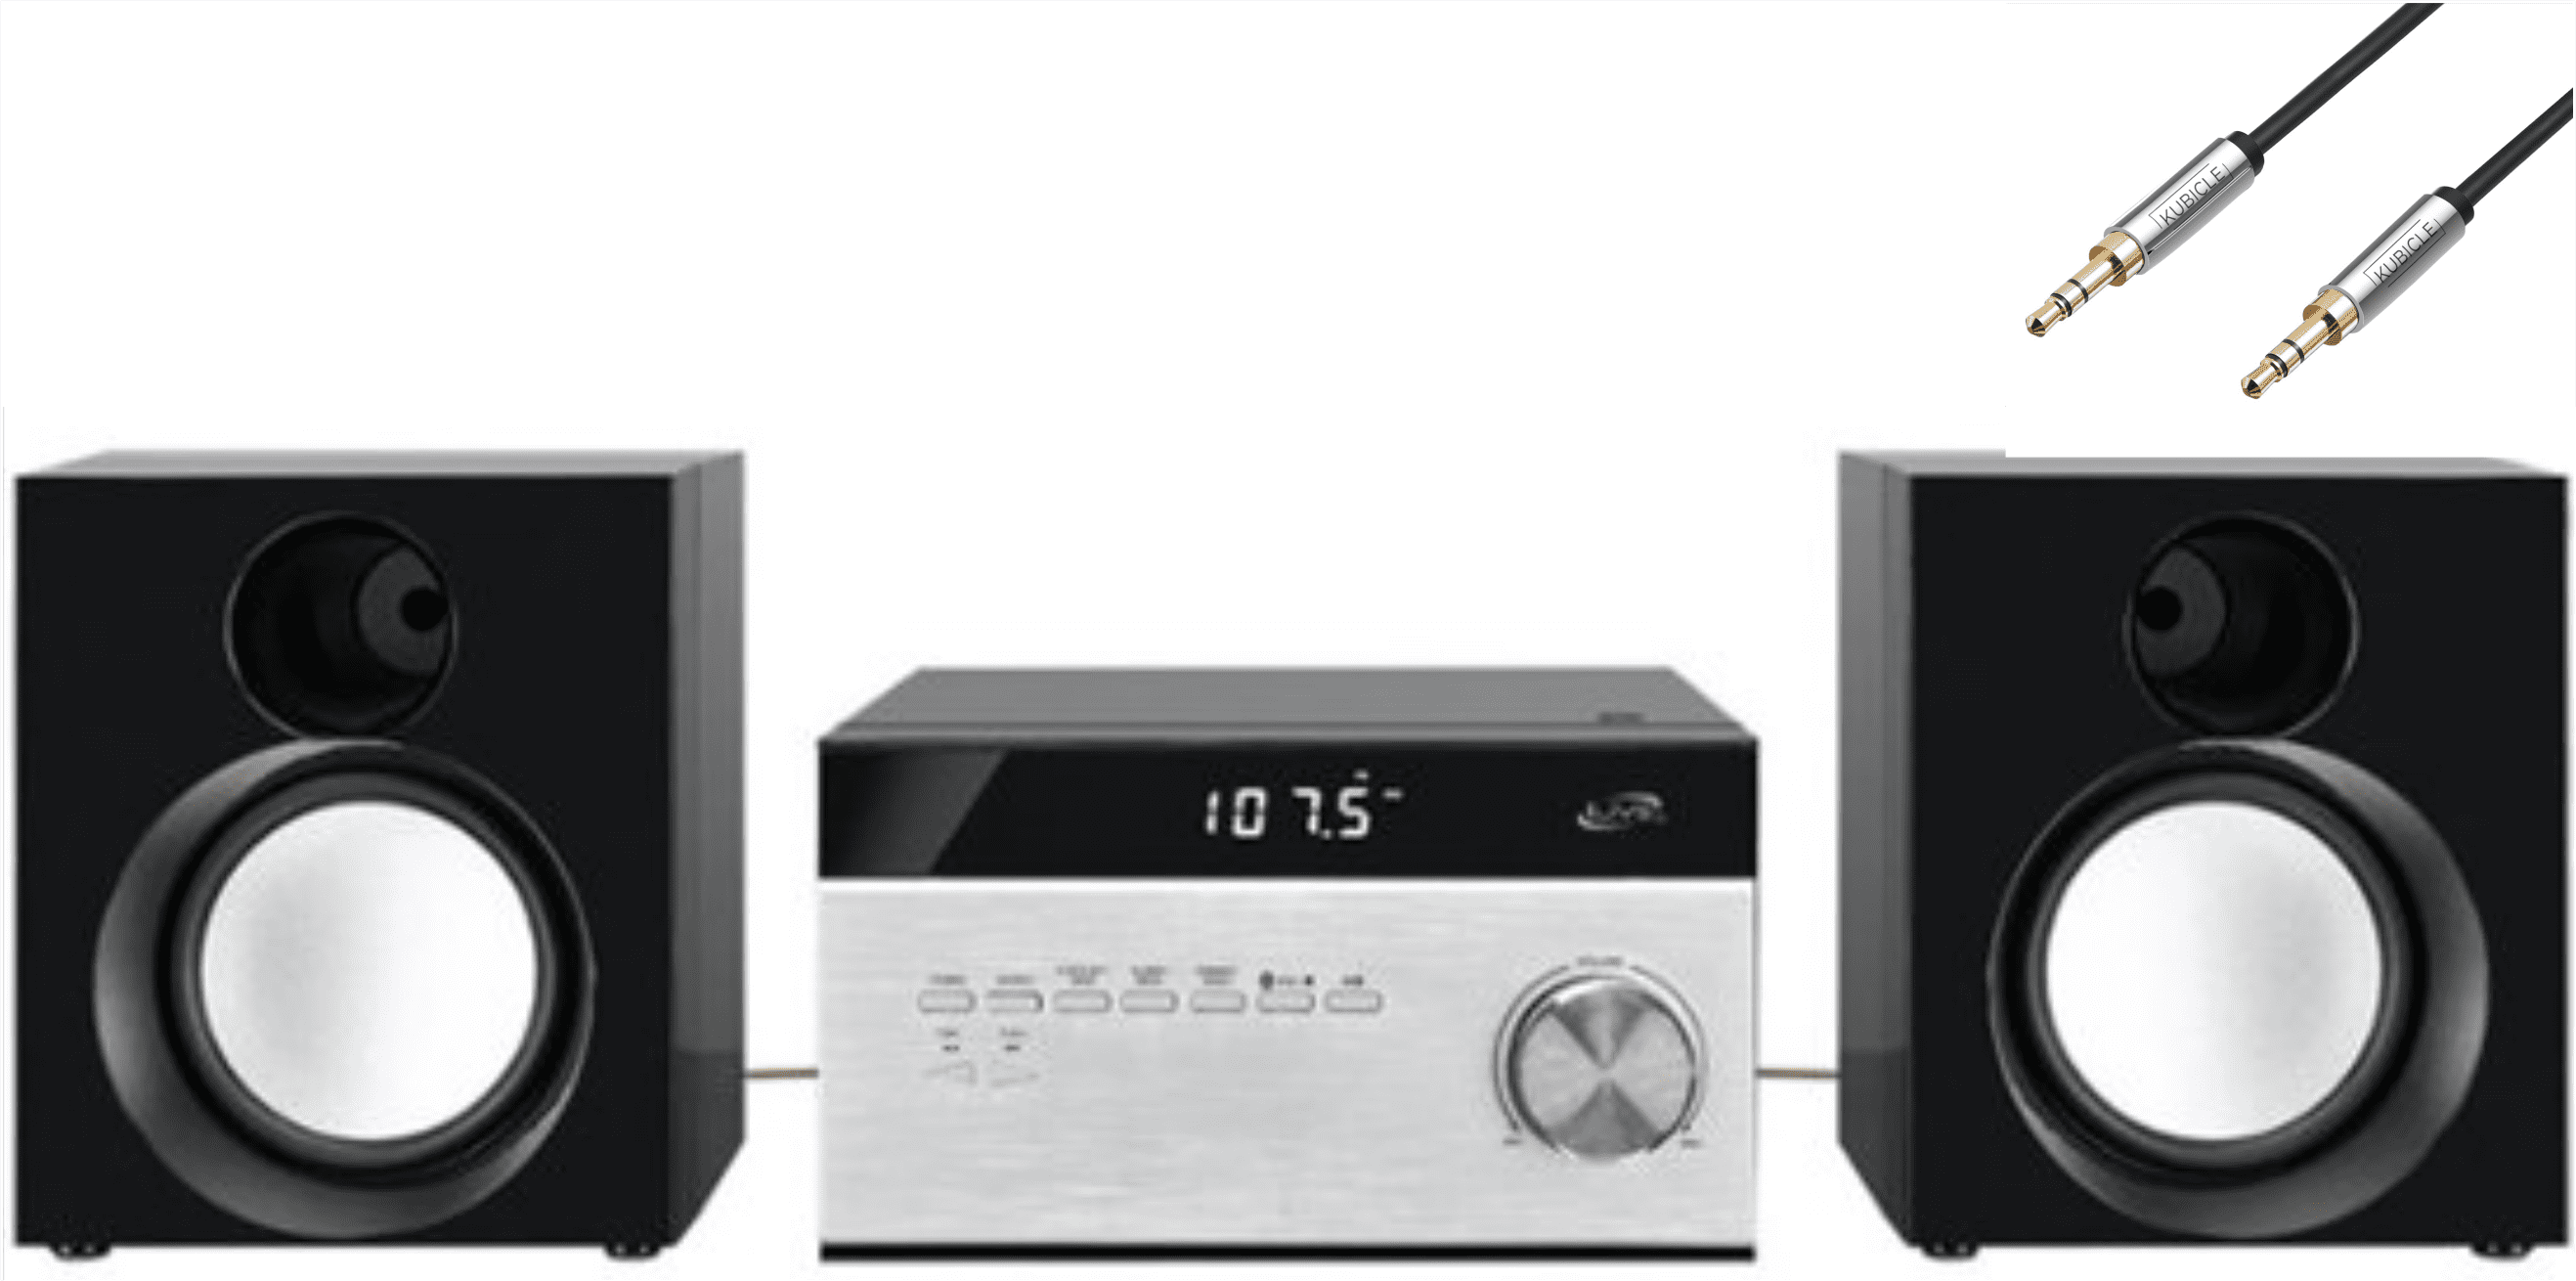 iLive Desktop Hi-Fi Home Audio Cd Player & Digital AM/FM Radio Stereo Sound System Plus 6ft Kubicle Aux Cable Bundle